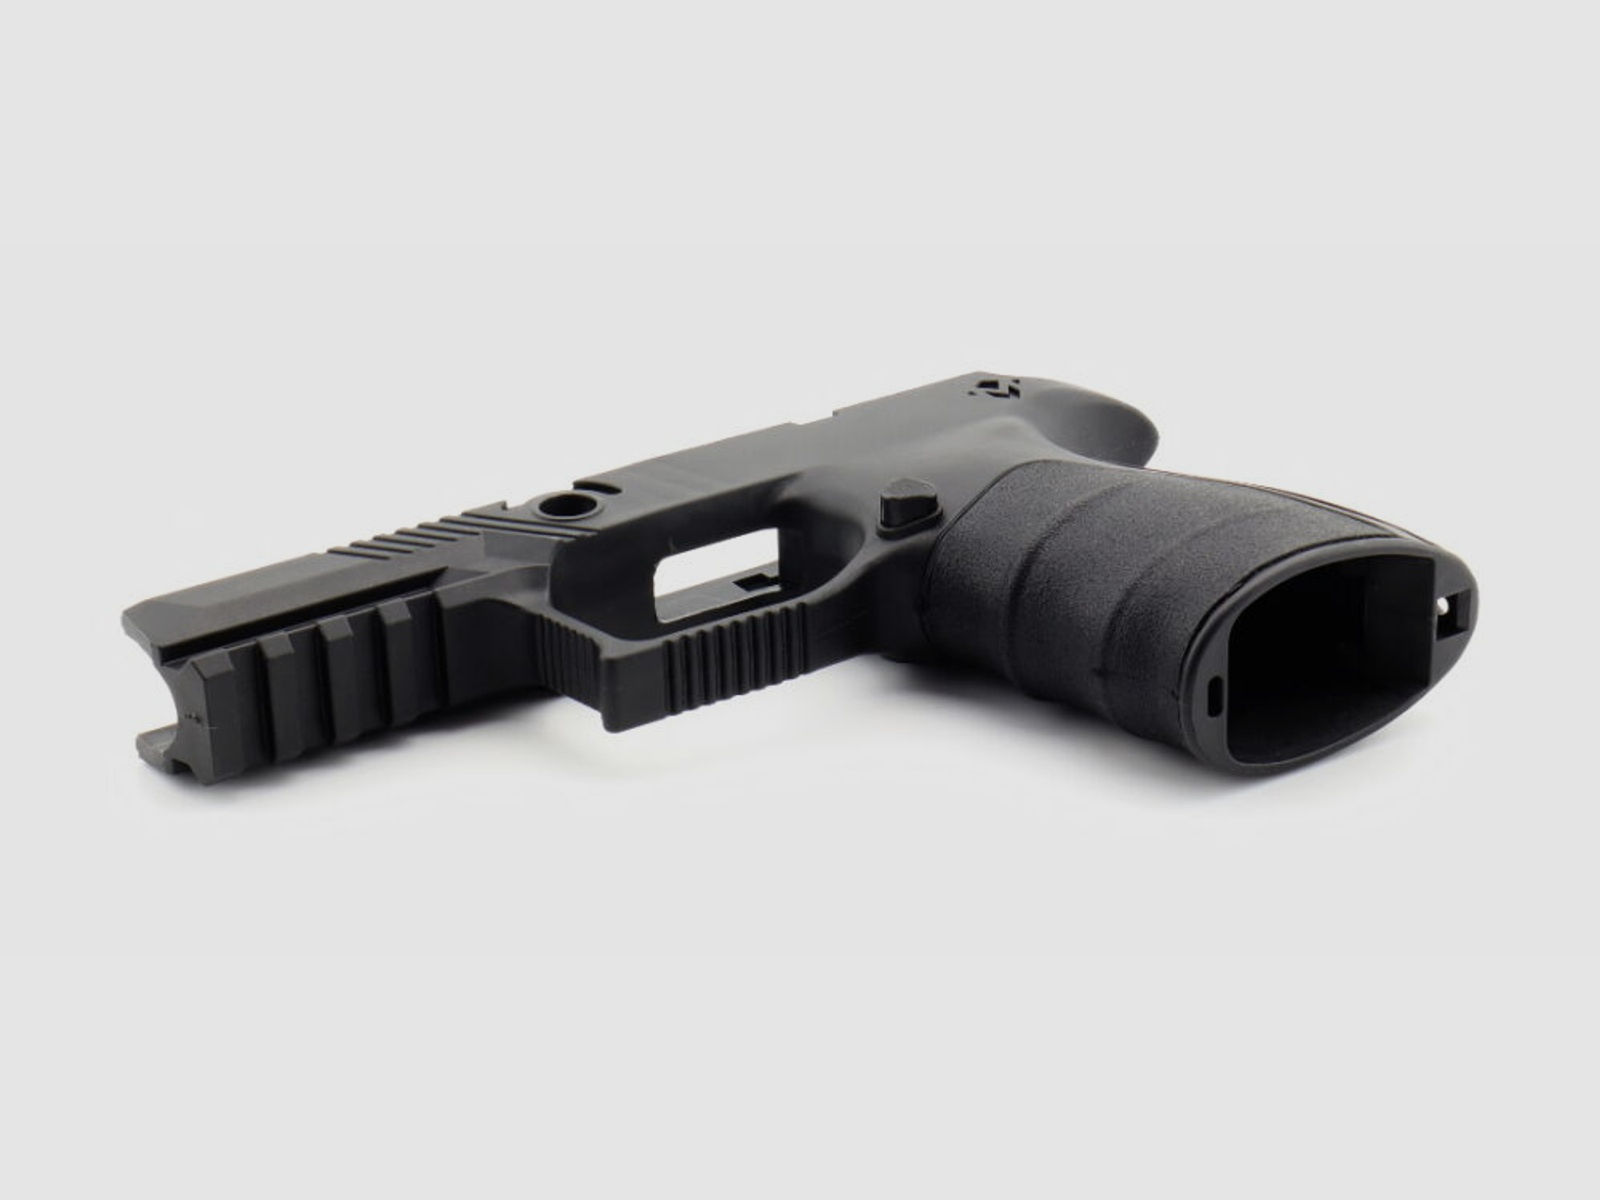 MIRZON	 Griffstück / Griffmodul Enhanced Black für Sig Sauer P320 Pistole